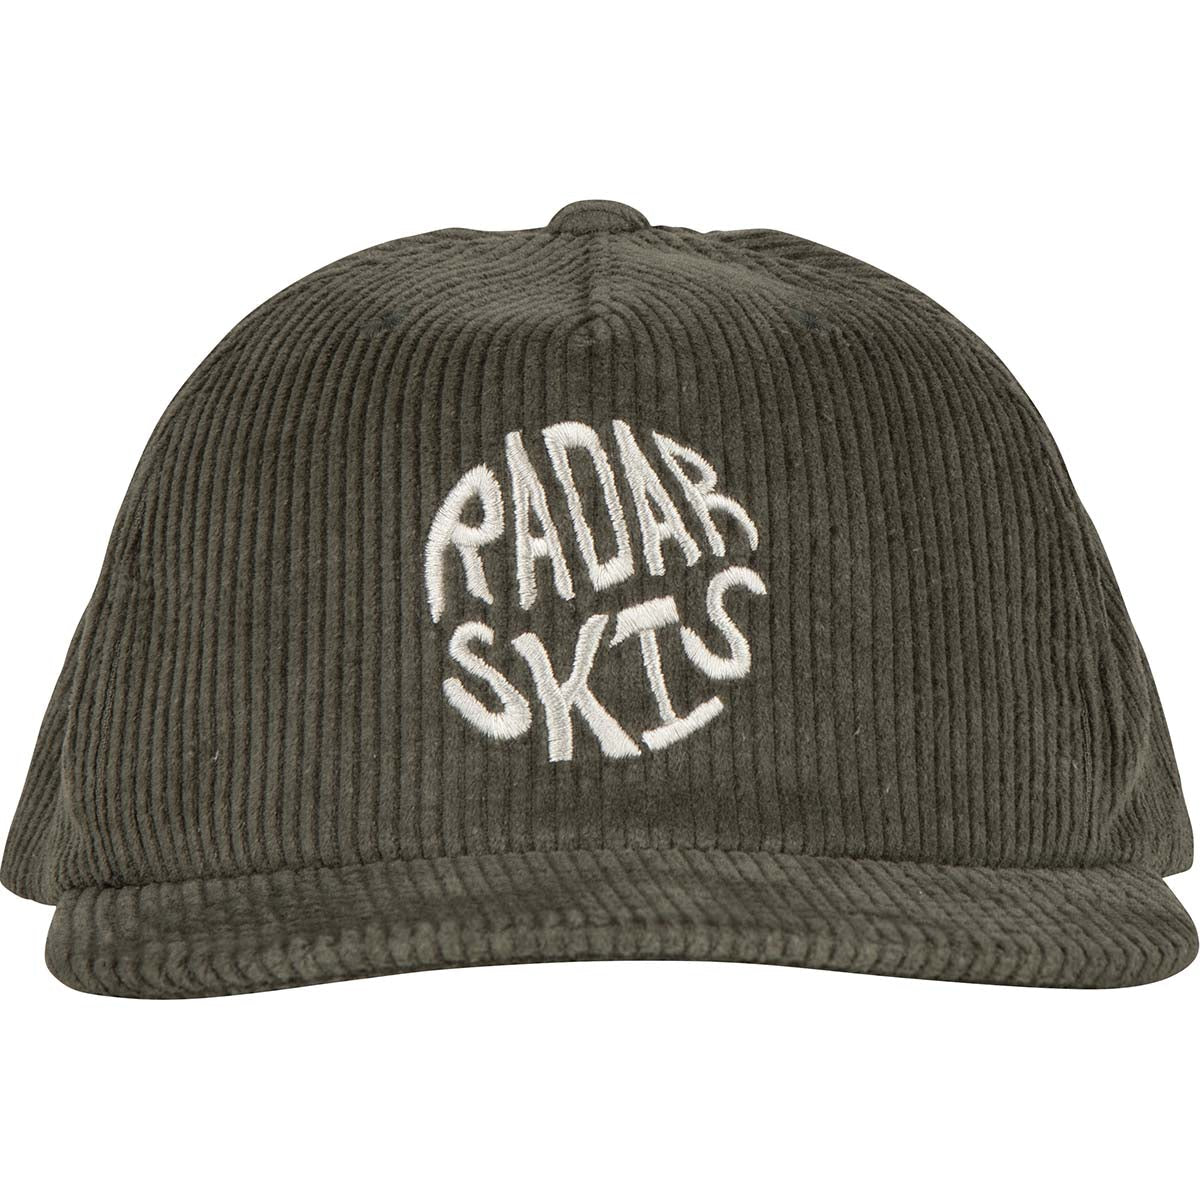 Radar Groovy Snapback Hat in Moss Corduroy - BoardCo